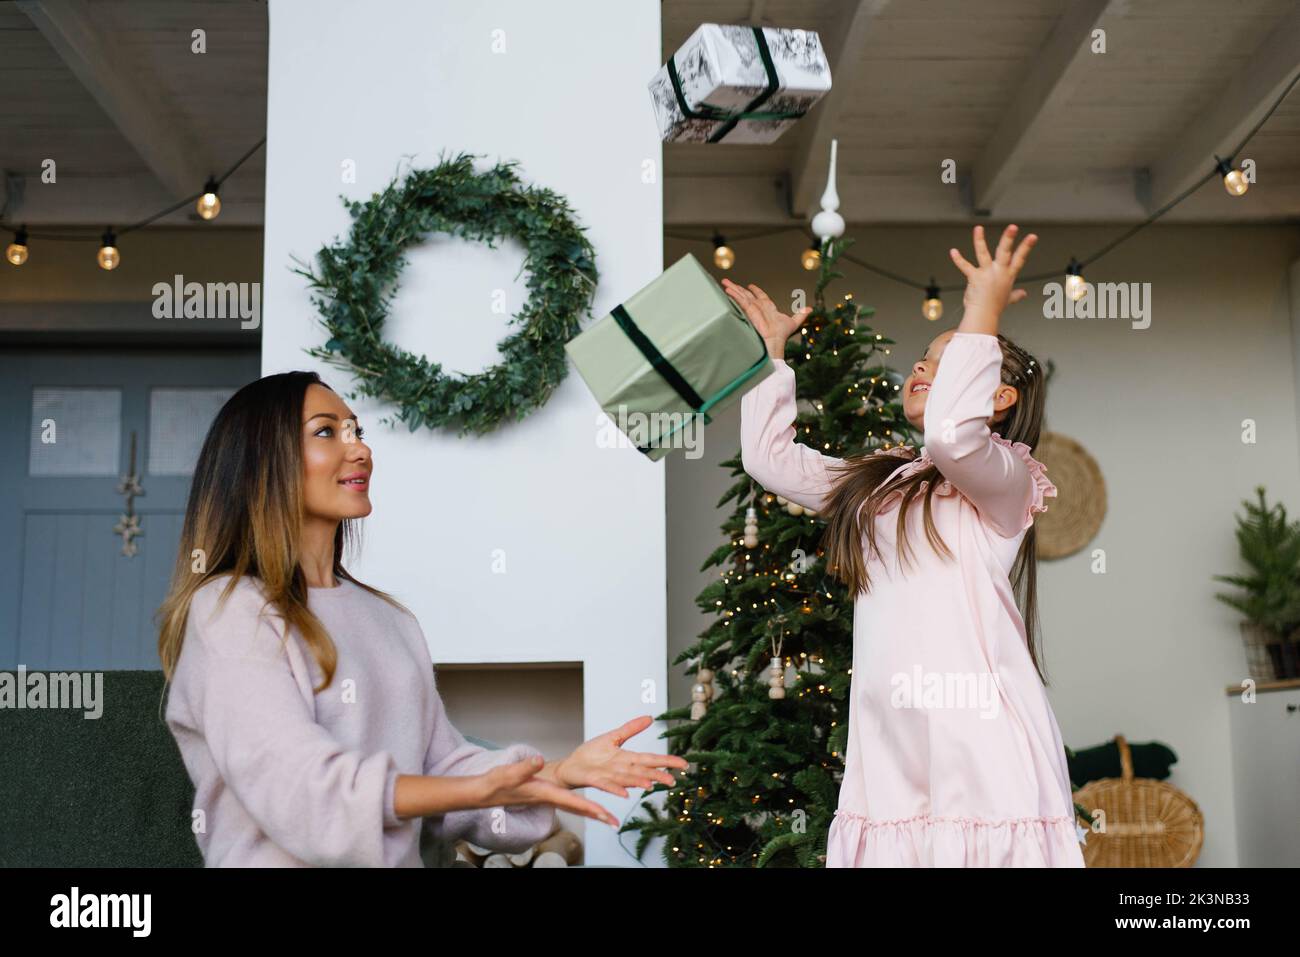 Madre e hija celebran en el árbol de Navidad, lanzando regalos Foto de stock